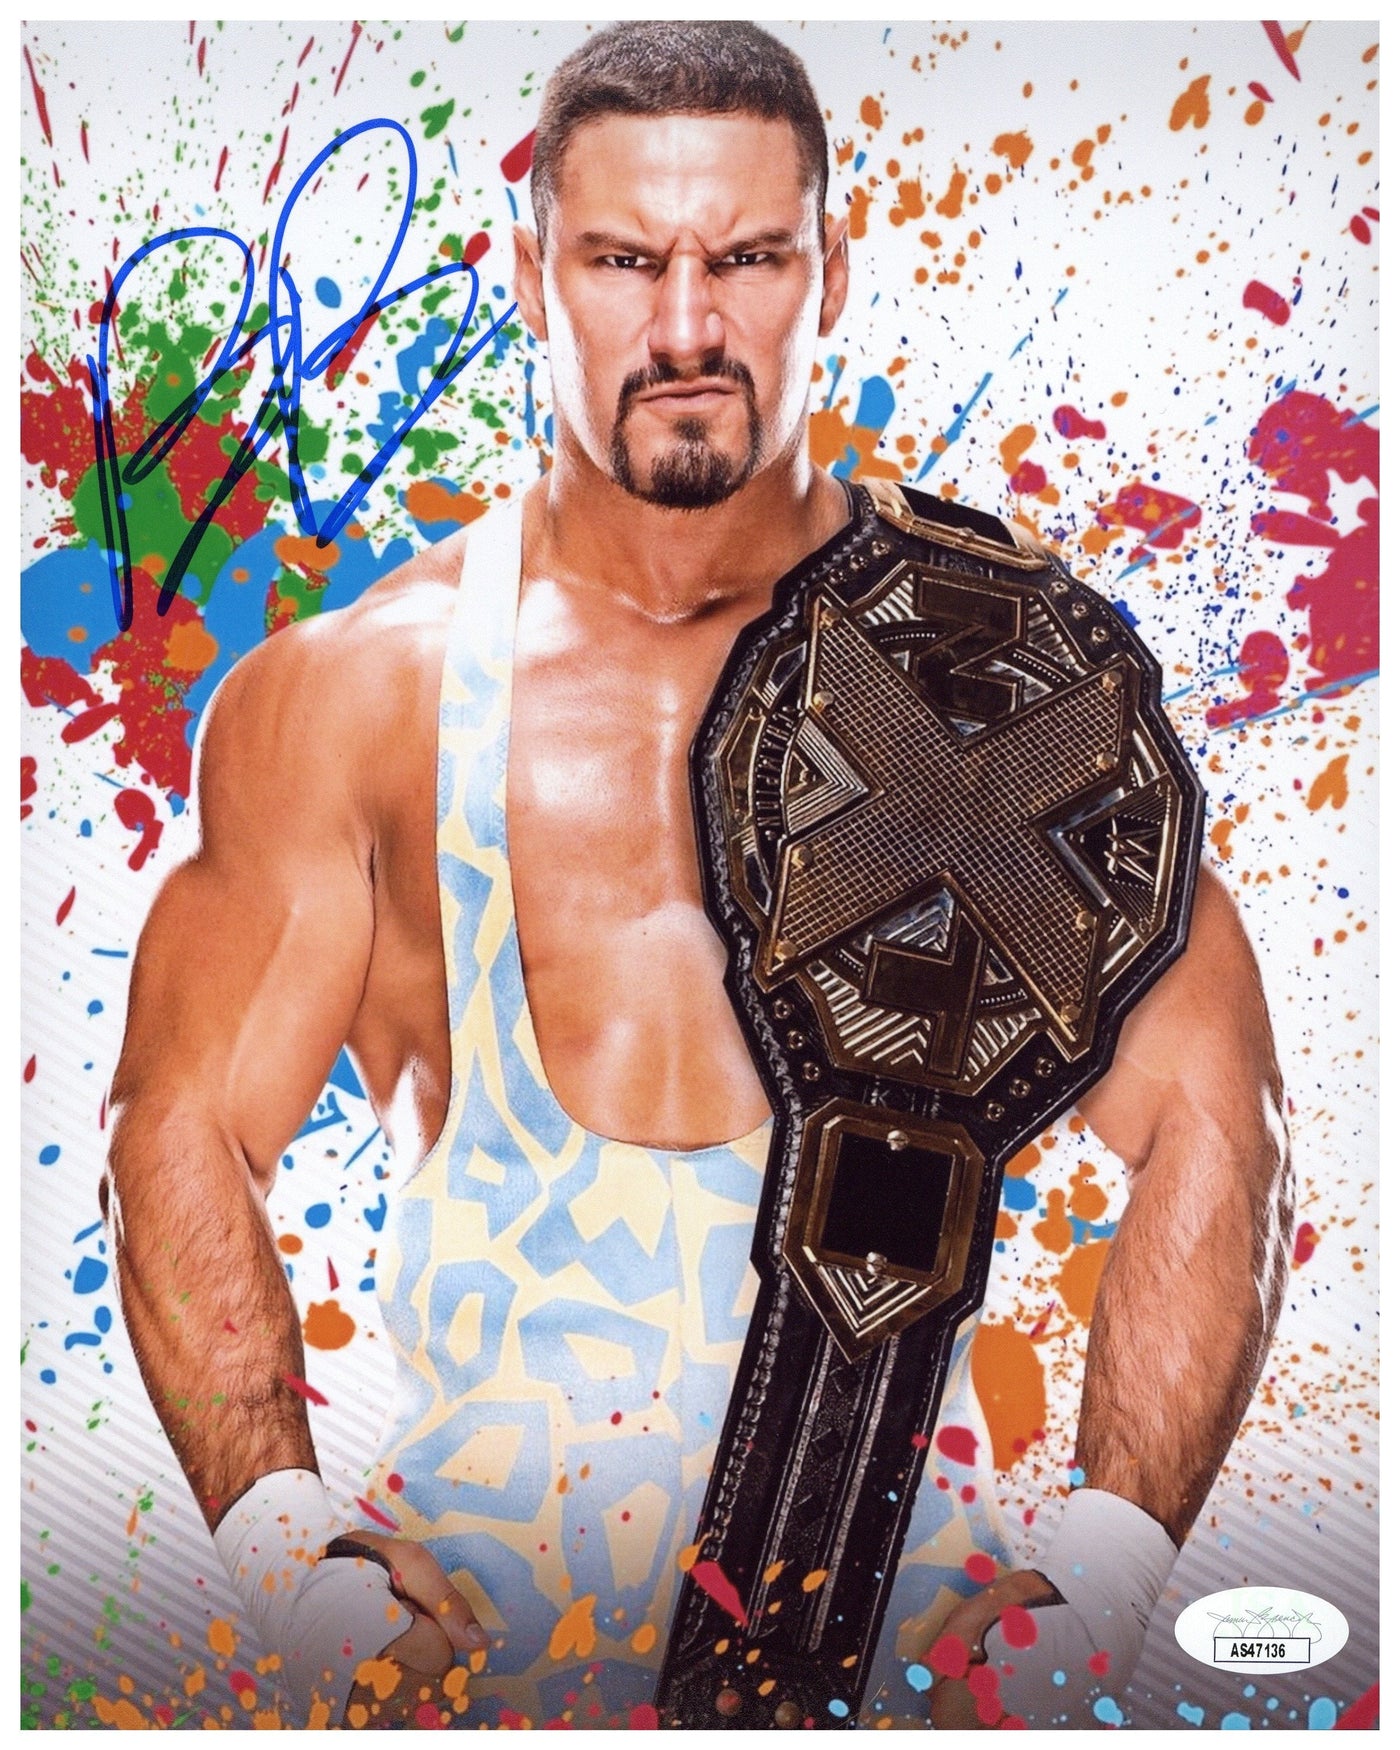 BRON BREAKKER SIGNED 8X10 PHOTO WWE NXT WRESTLER AUTOGRAPHED JSA COA